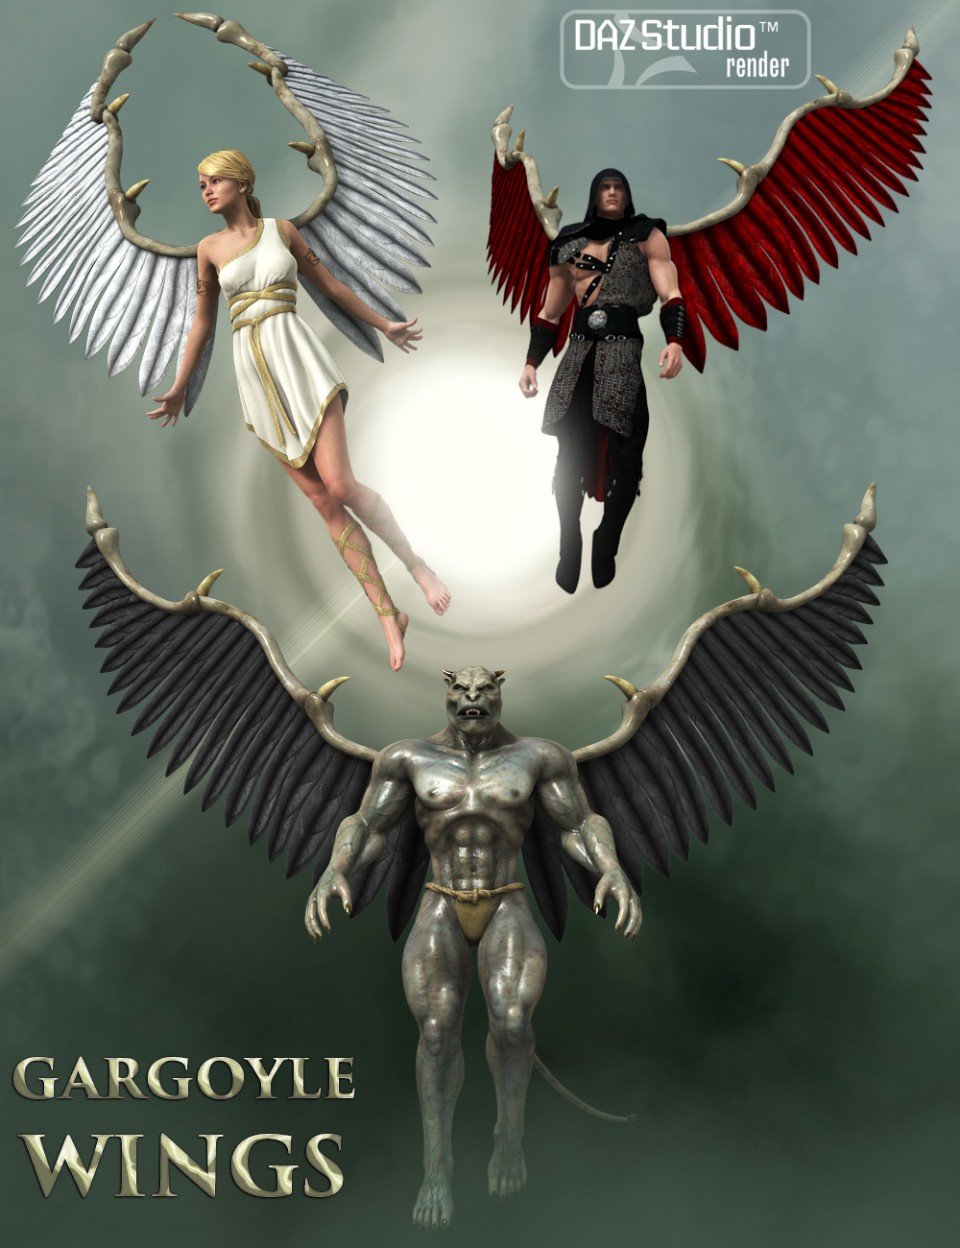 Gargoyle Wings_DAZ3DDL